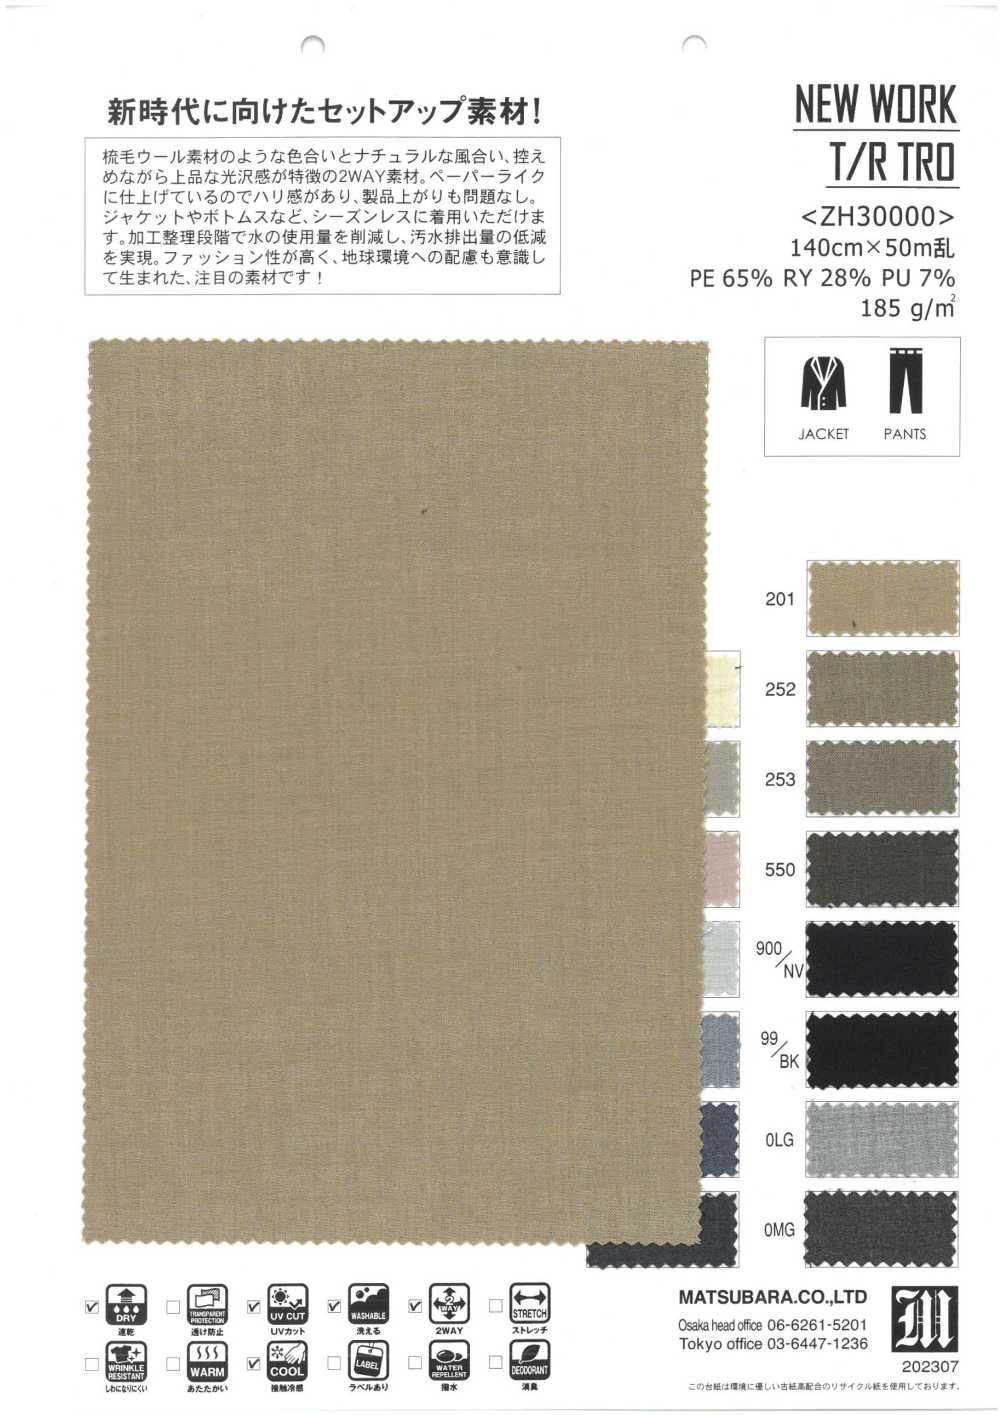 ZH30000 NEUE ARBEIT T/R TRO[Textilgewebe] Matsubara